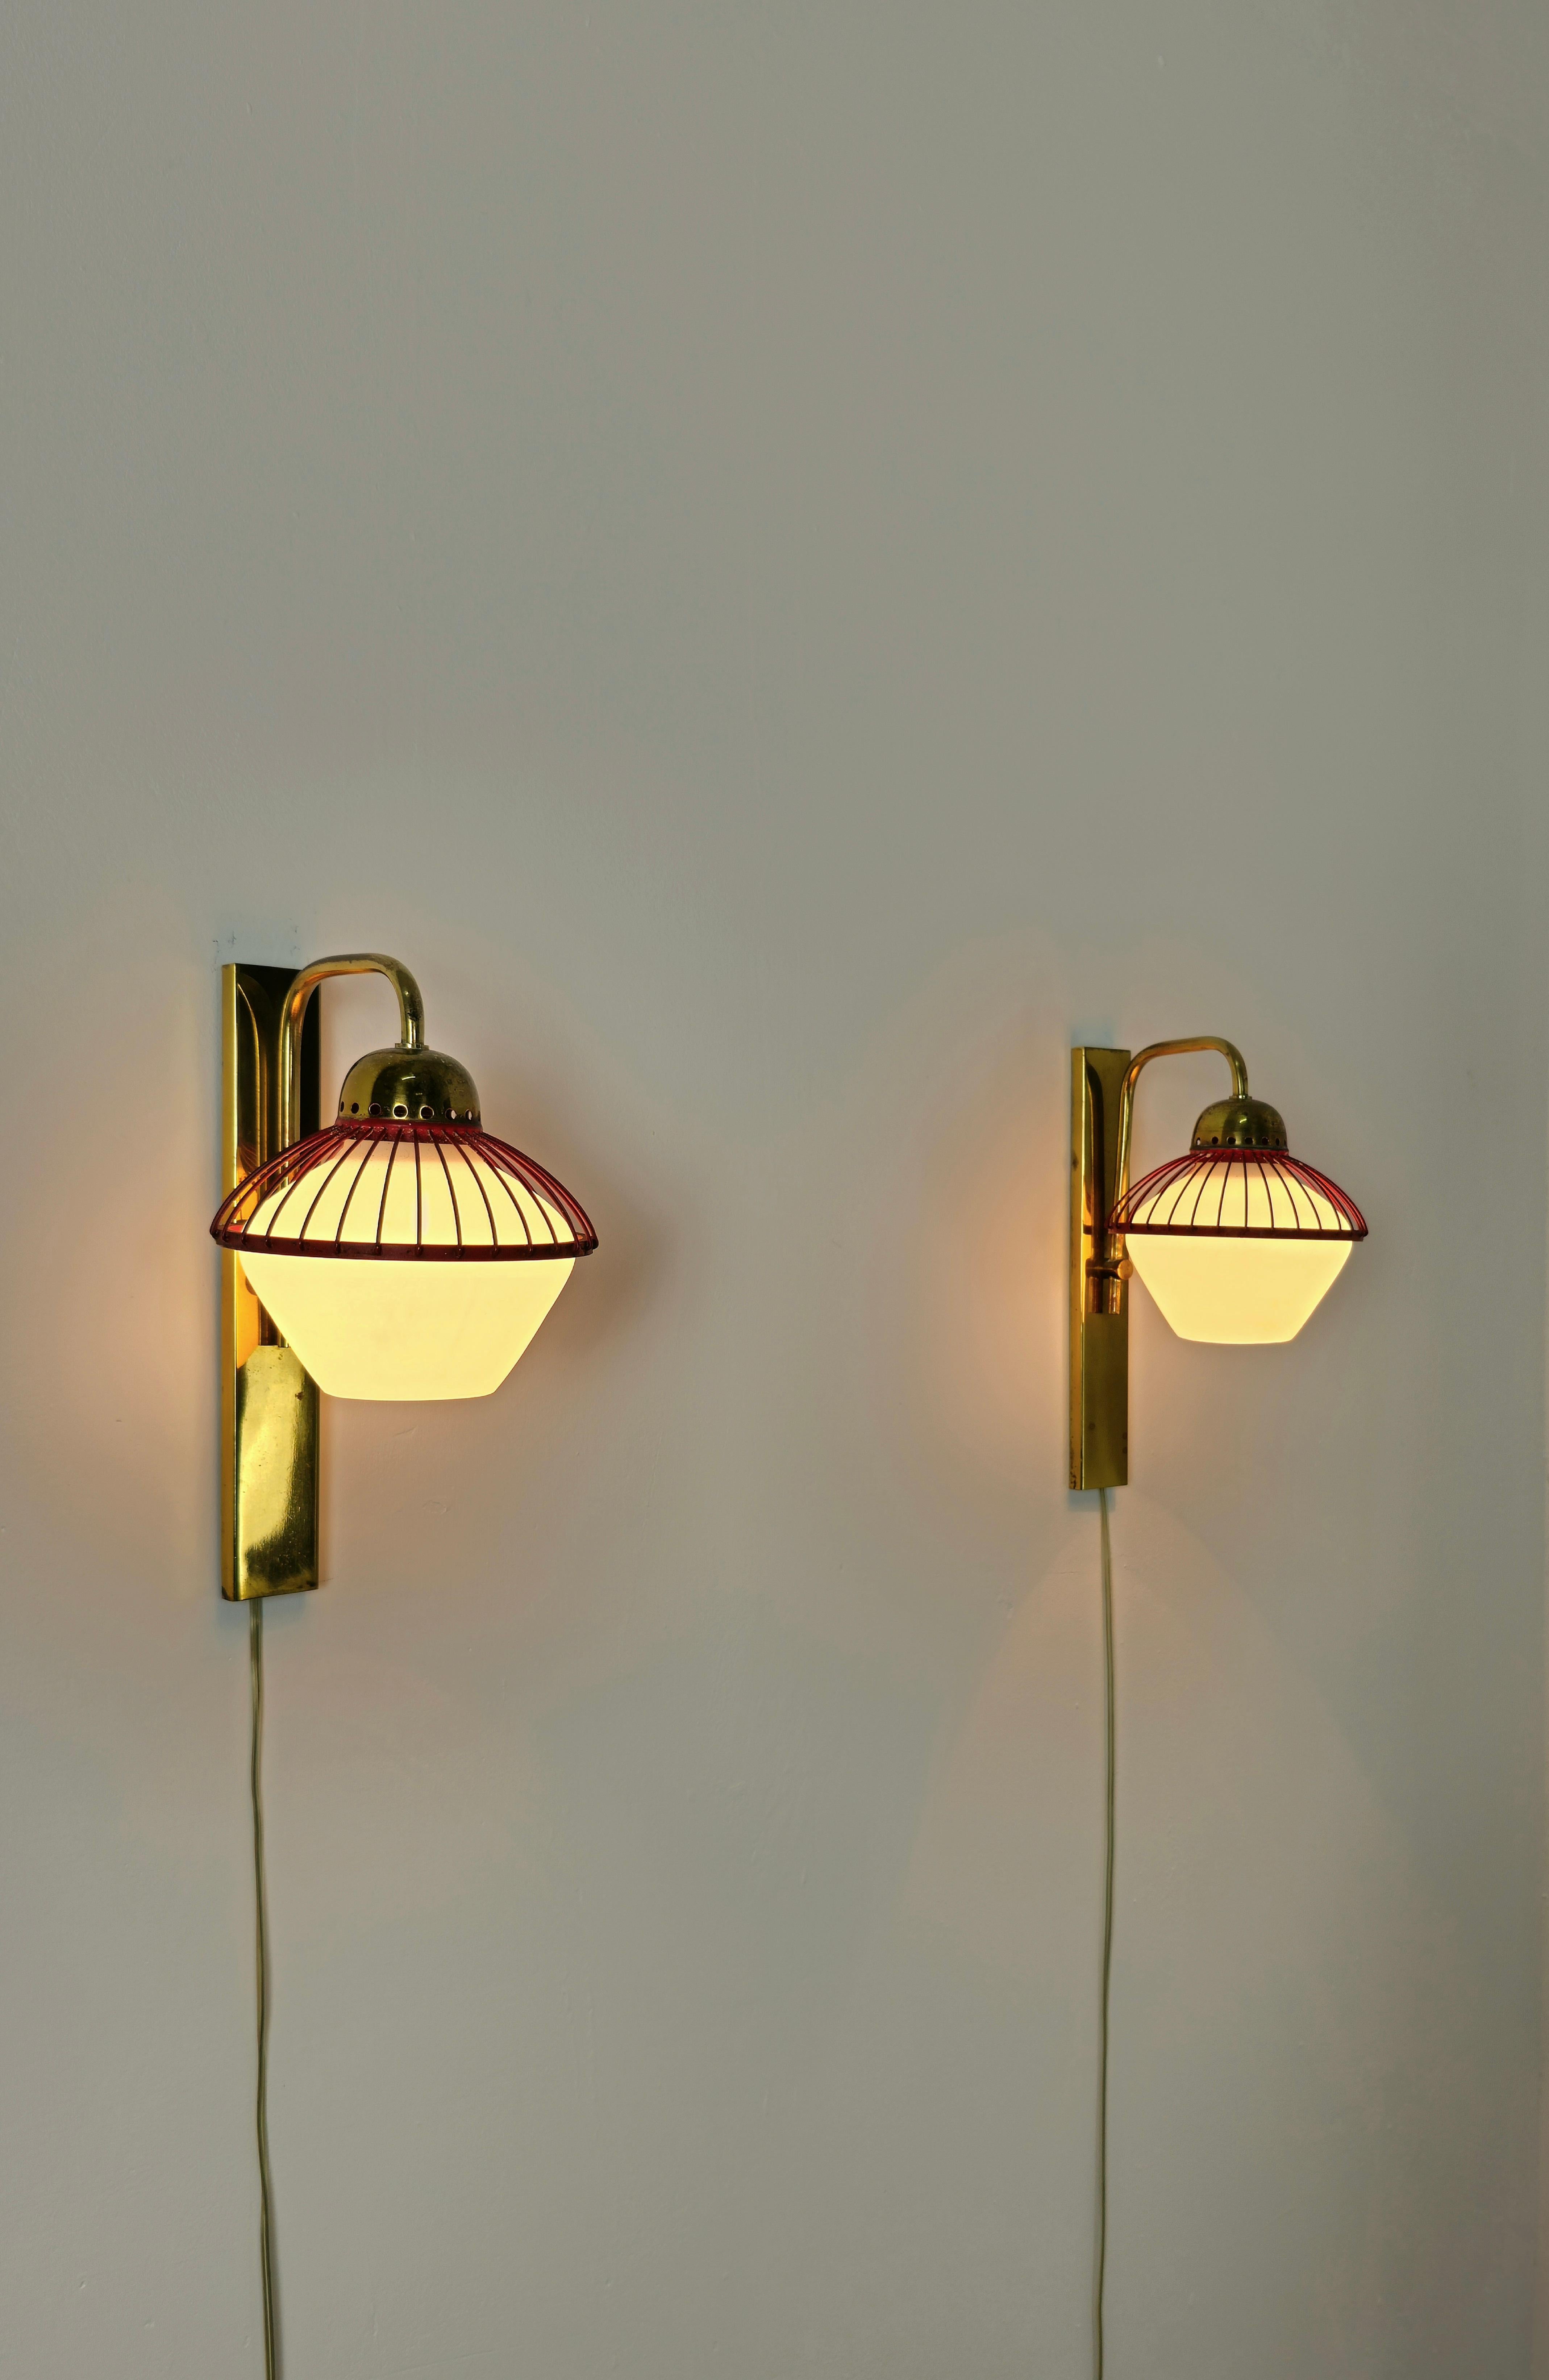 Satz von 2 Wandlampen, die Stilnovo zugeschrieben werden und in Italien in den 60er Jahren hergestellt wurden.
Jede einzelne Wandleuchte wurde mit einer Struktur und einem gebogenen Arm aus Messing, einem Zubehörteil aus rot emailliertem Metall und